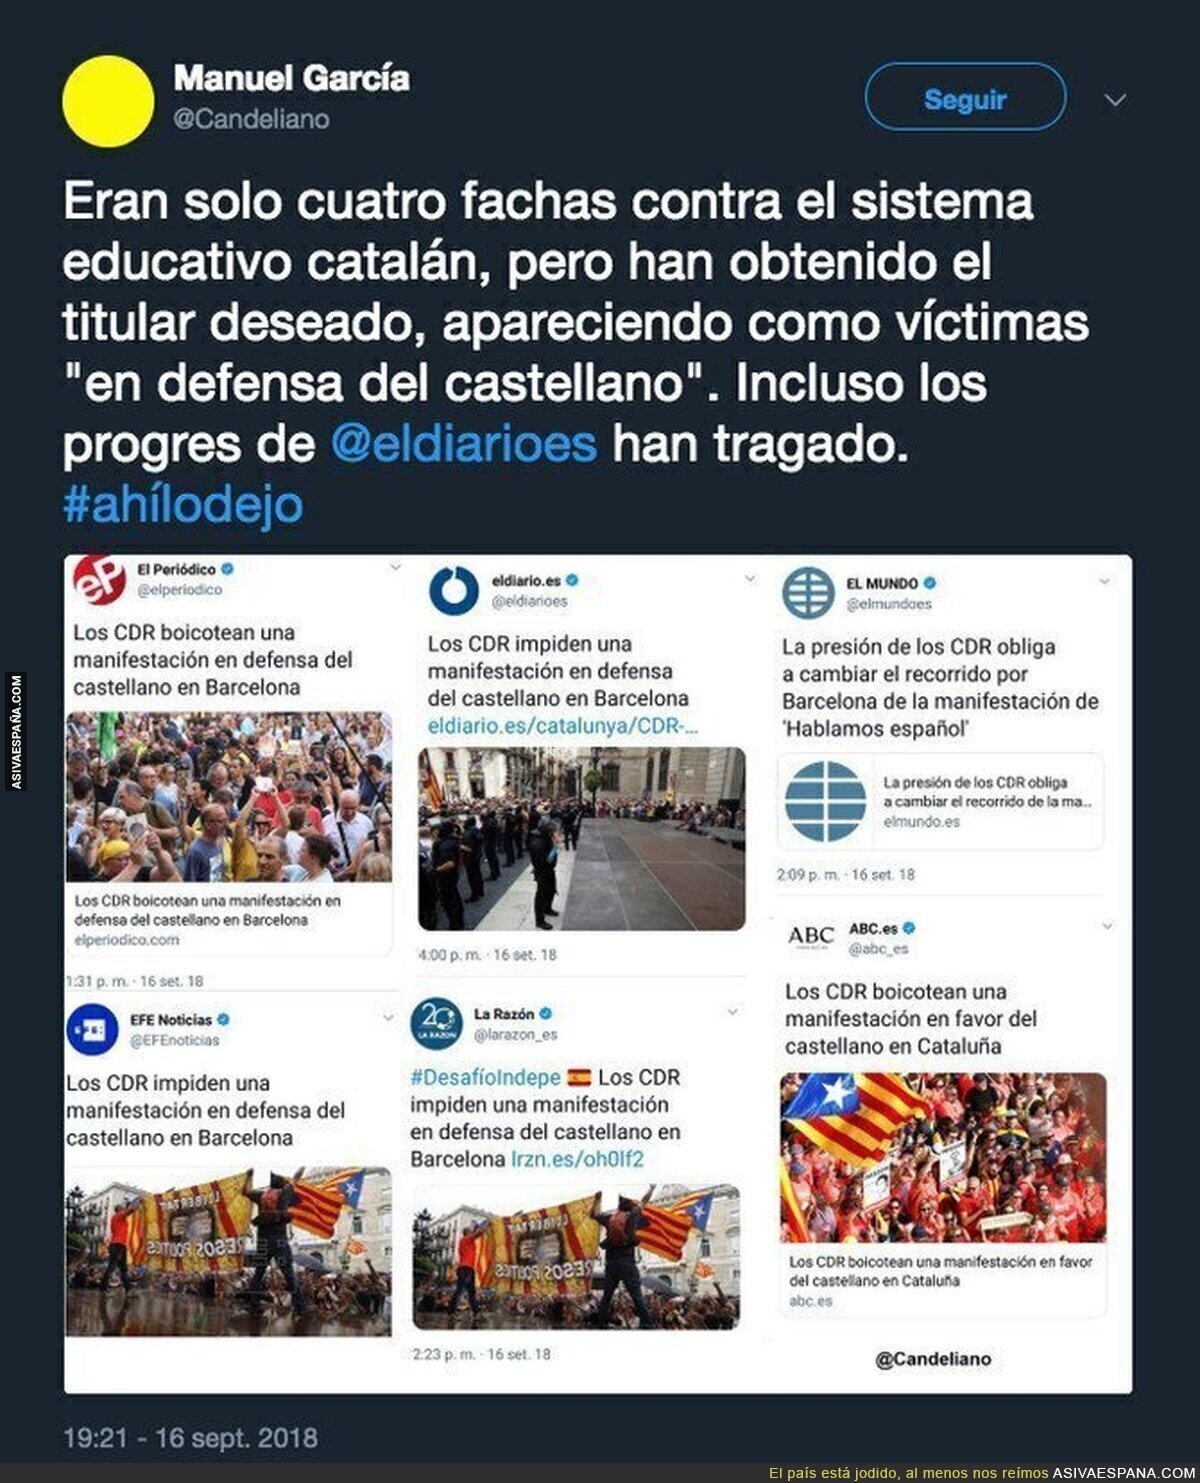 Este es el nivel del periodismo español